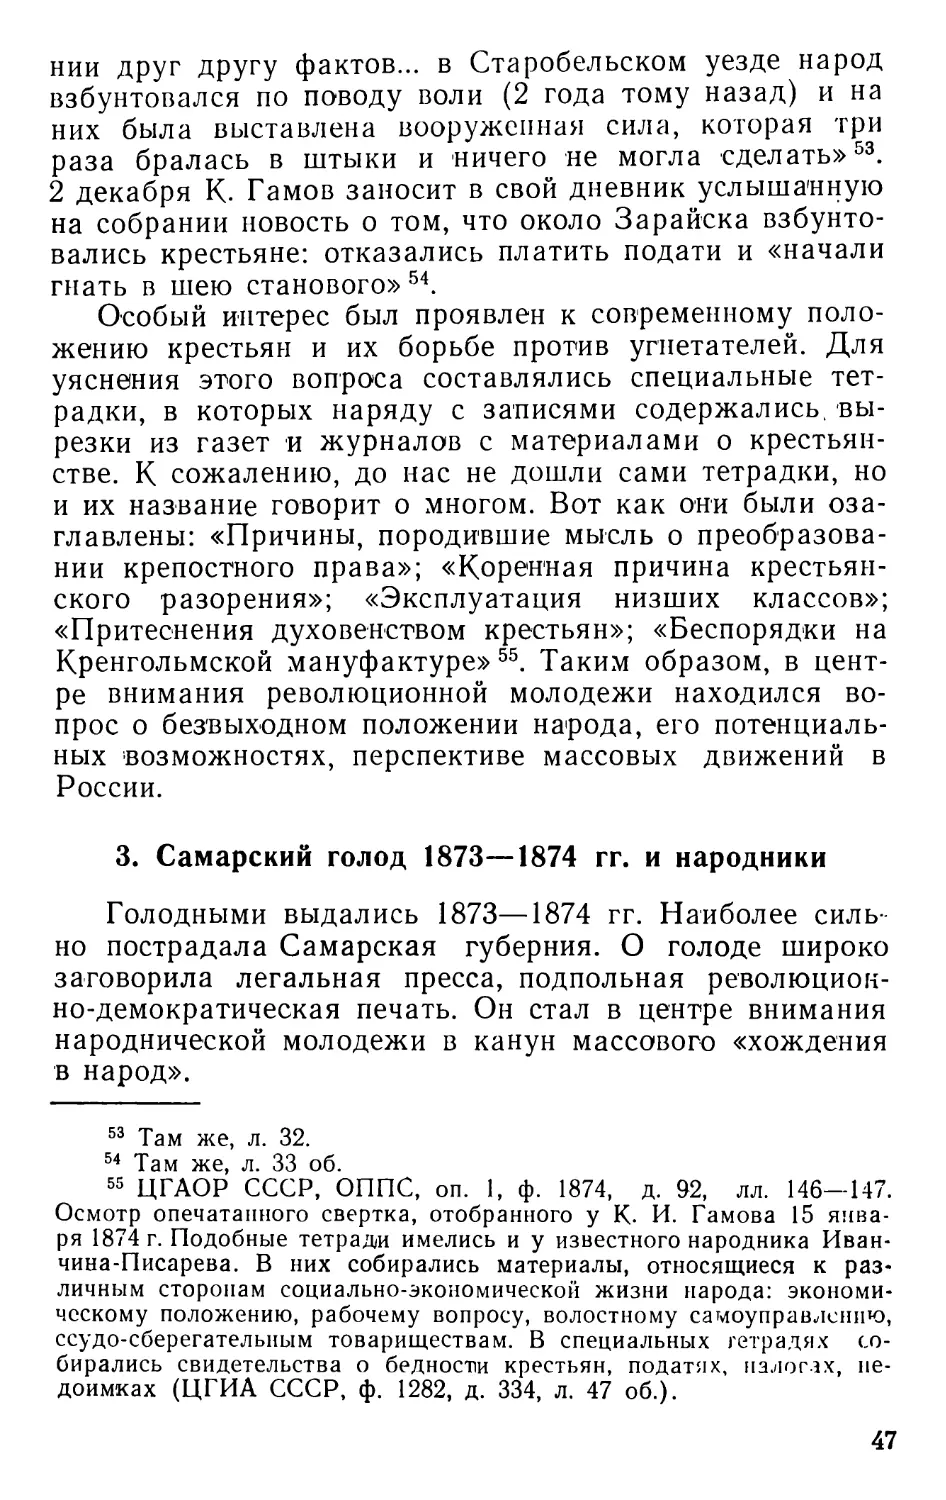 3. Самарский голод 1873—1874 гг. и народники